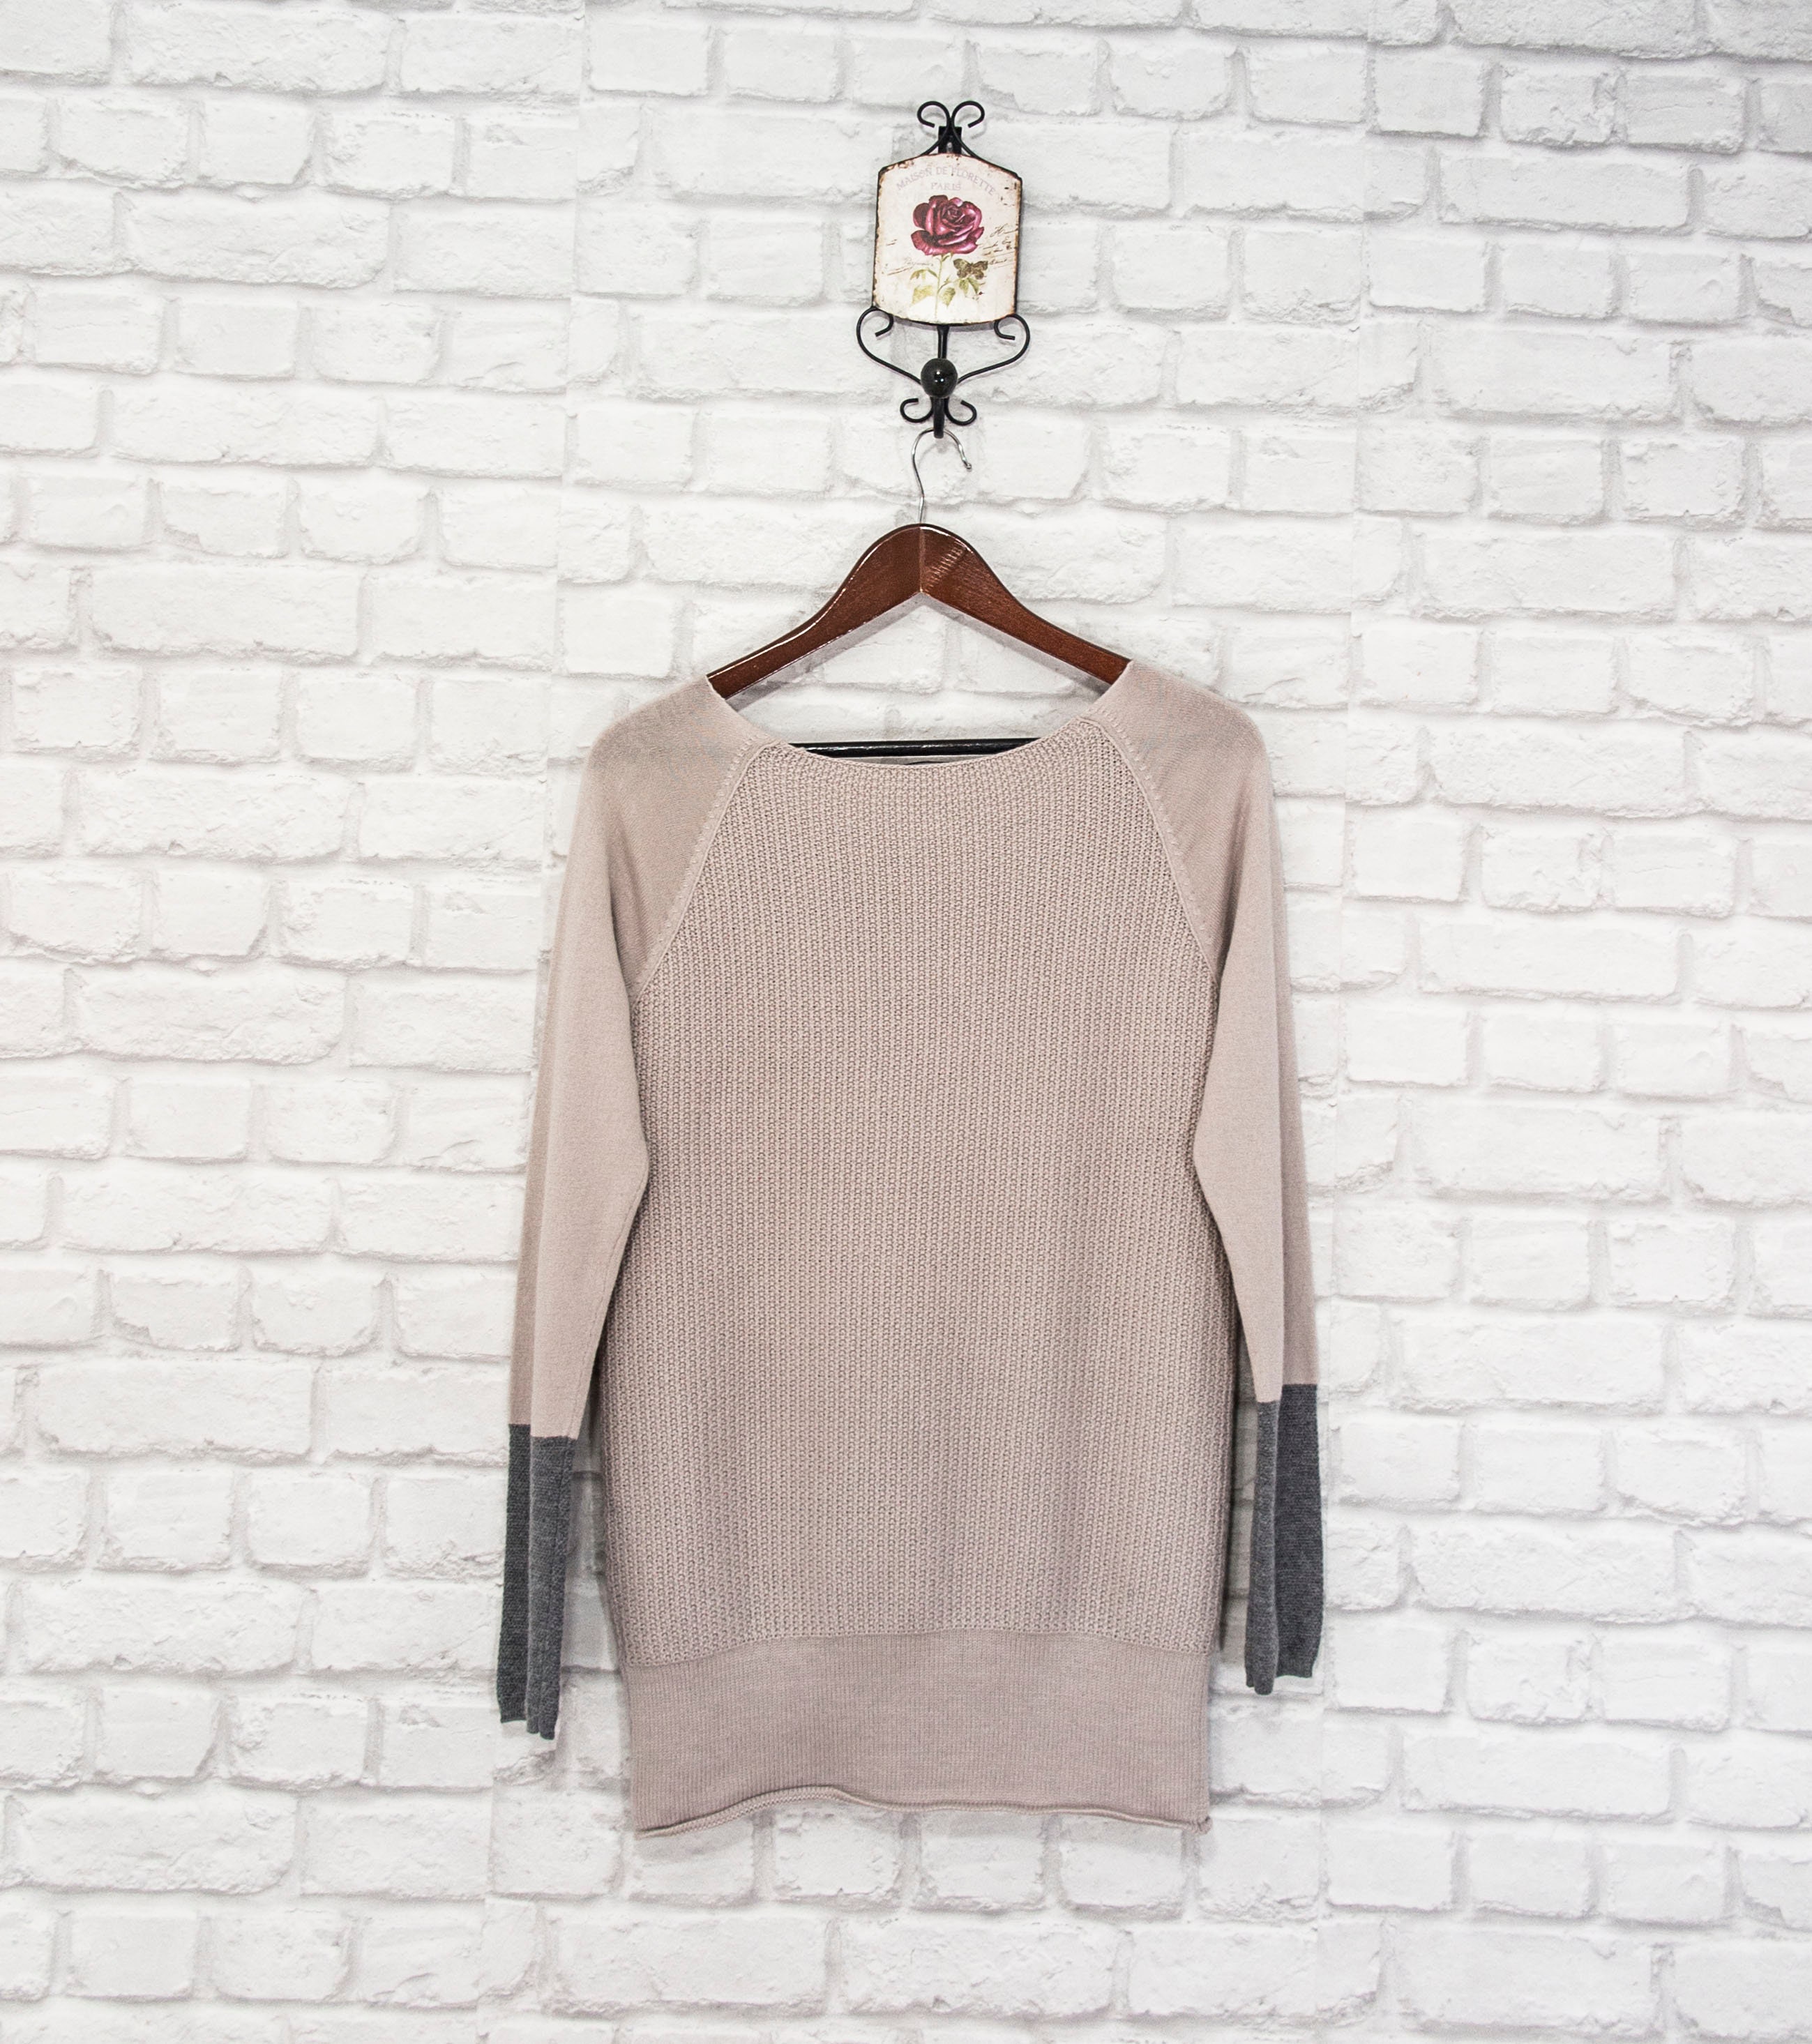 Patrizia Pepe Italian Designer Embellished Jumper Sweater Pullover Rhinestones Long sleeve size 1SUK10US6